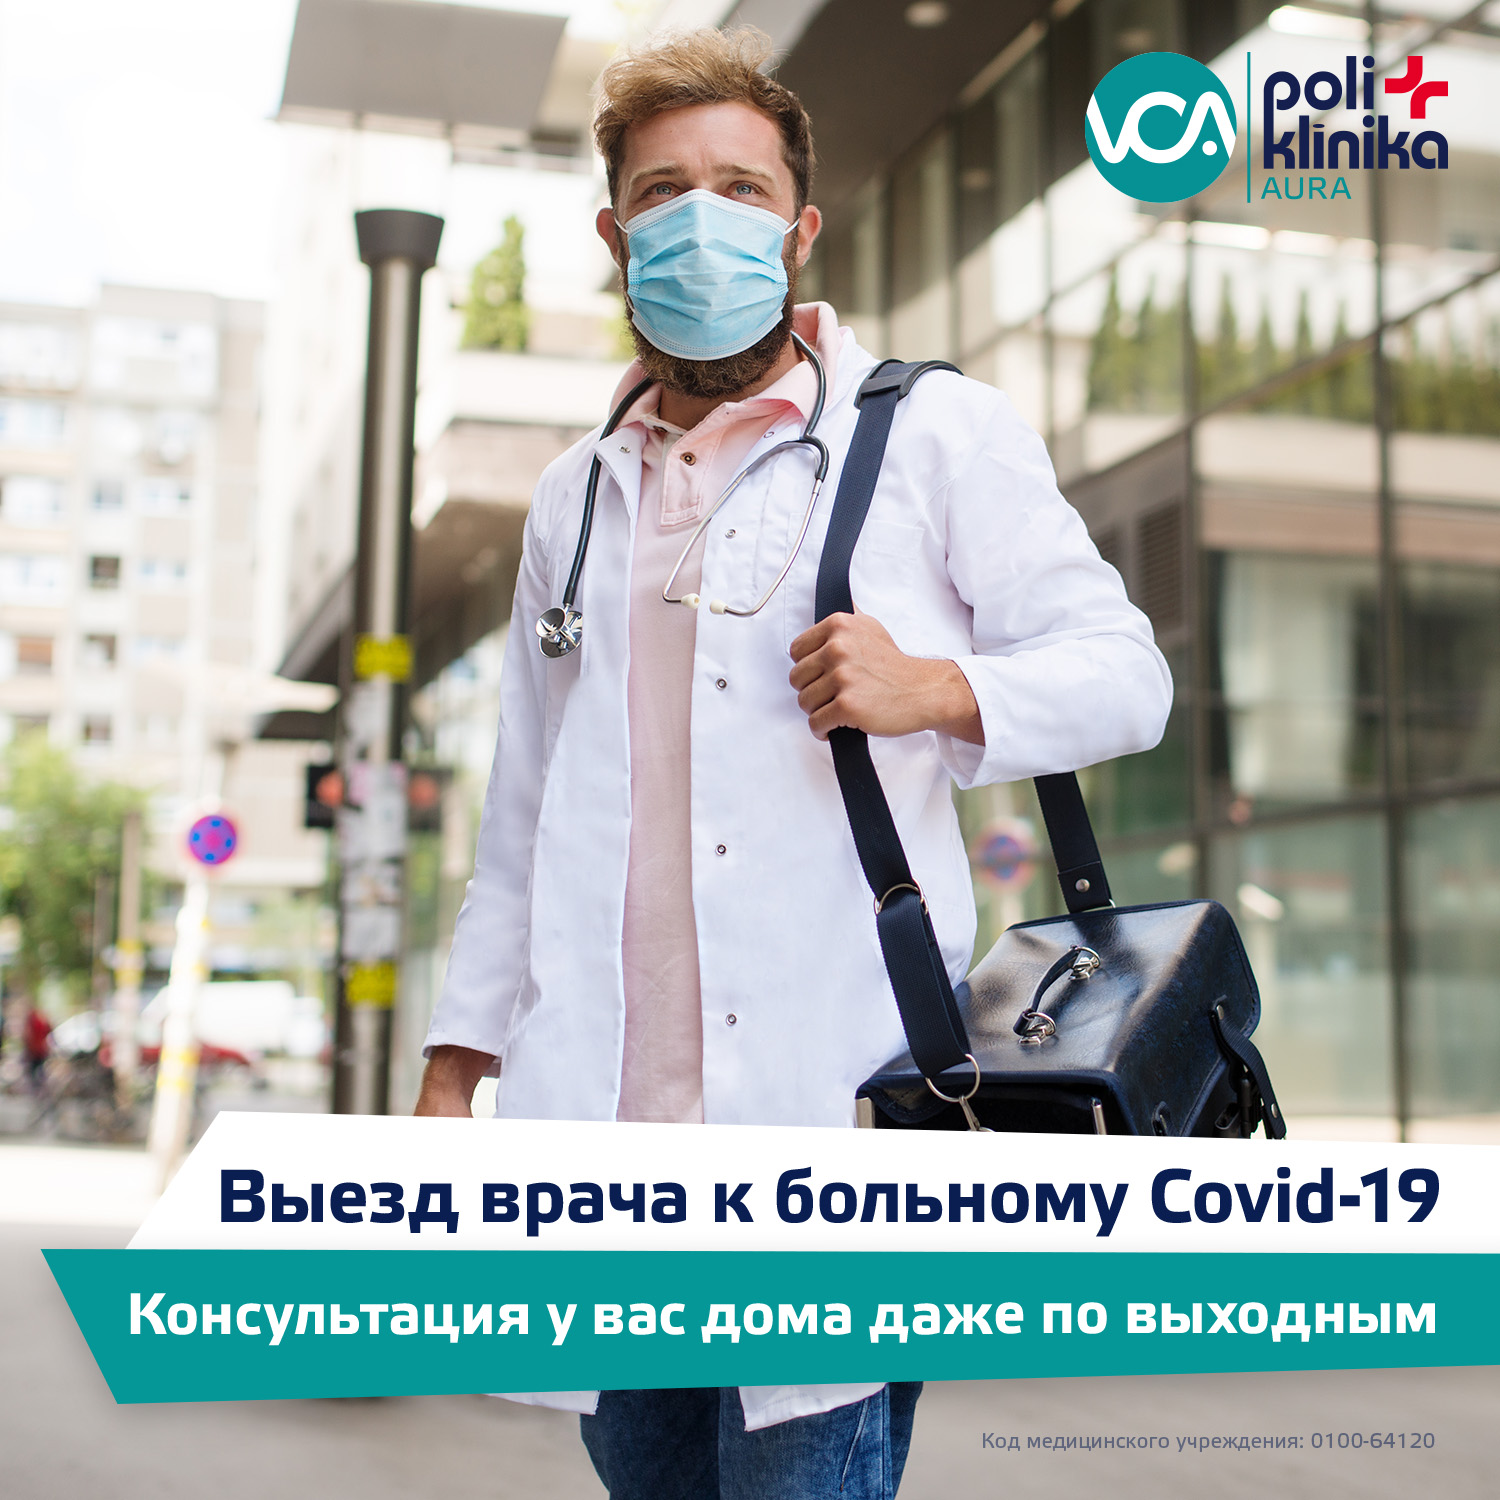 Консультация врача для больных Covid-19 на дому